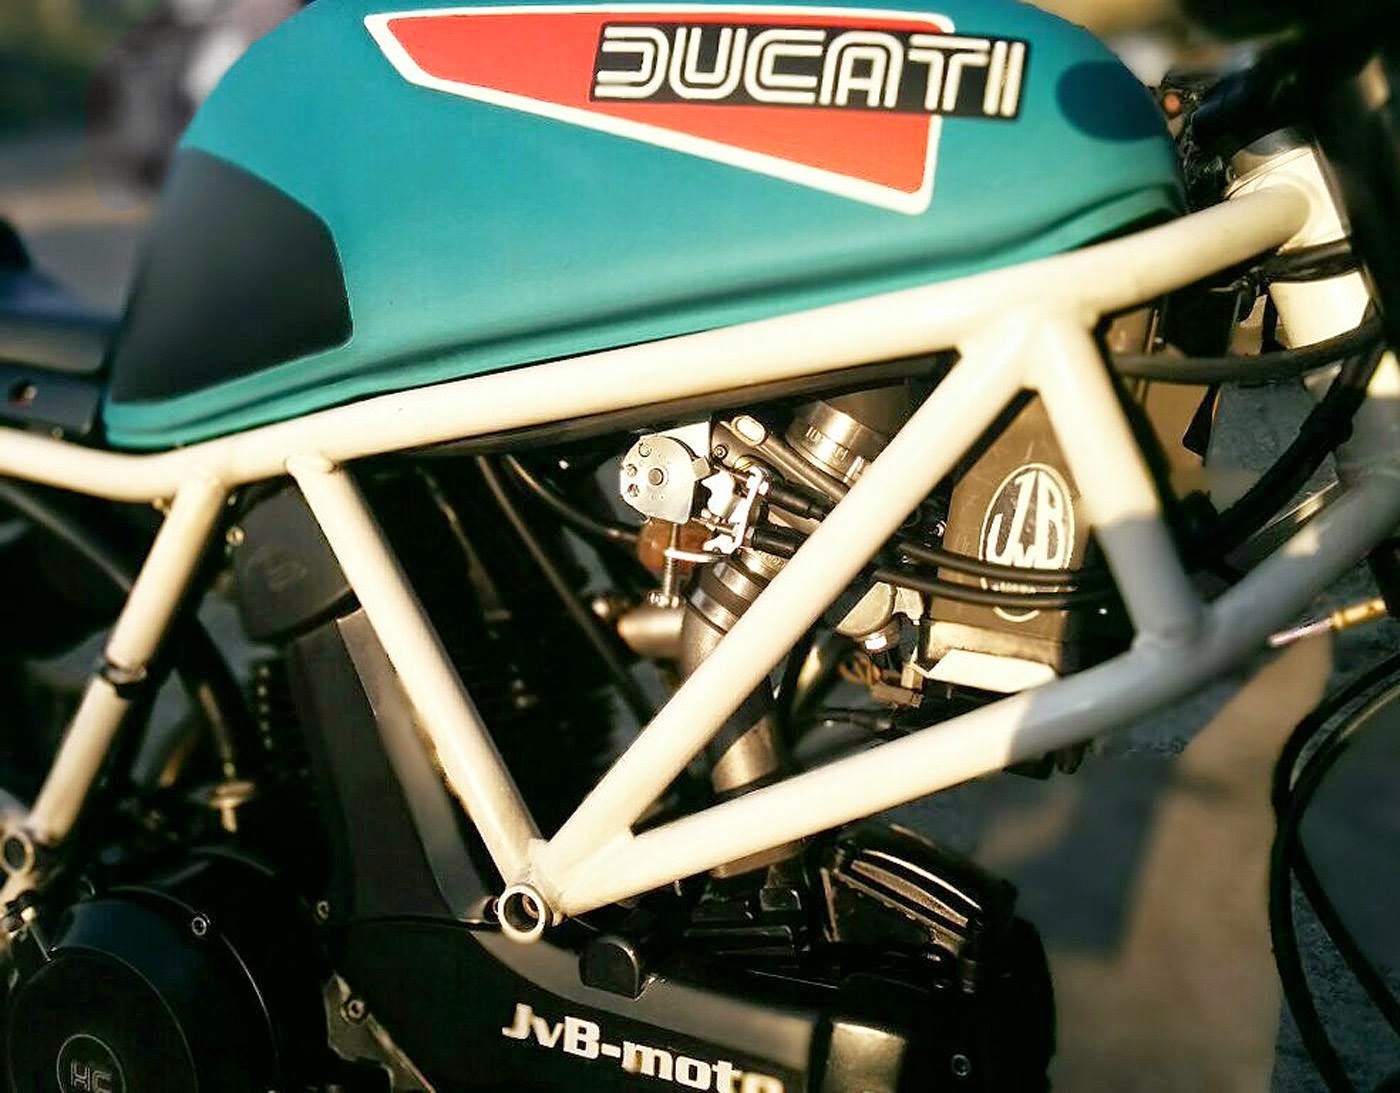 Il Ducatista - Desmo Magazine: JvB Moto Ducati 750 Sport